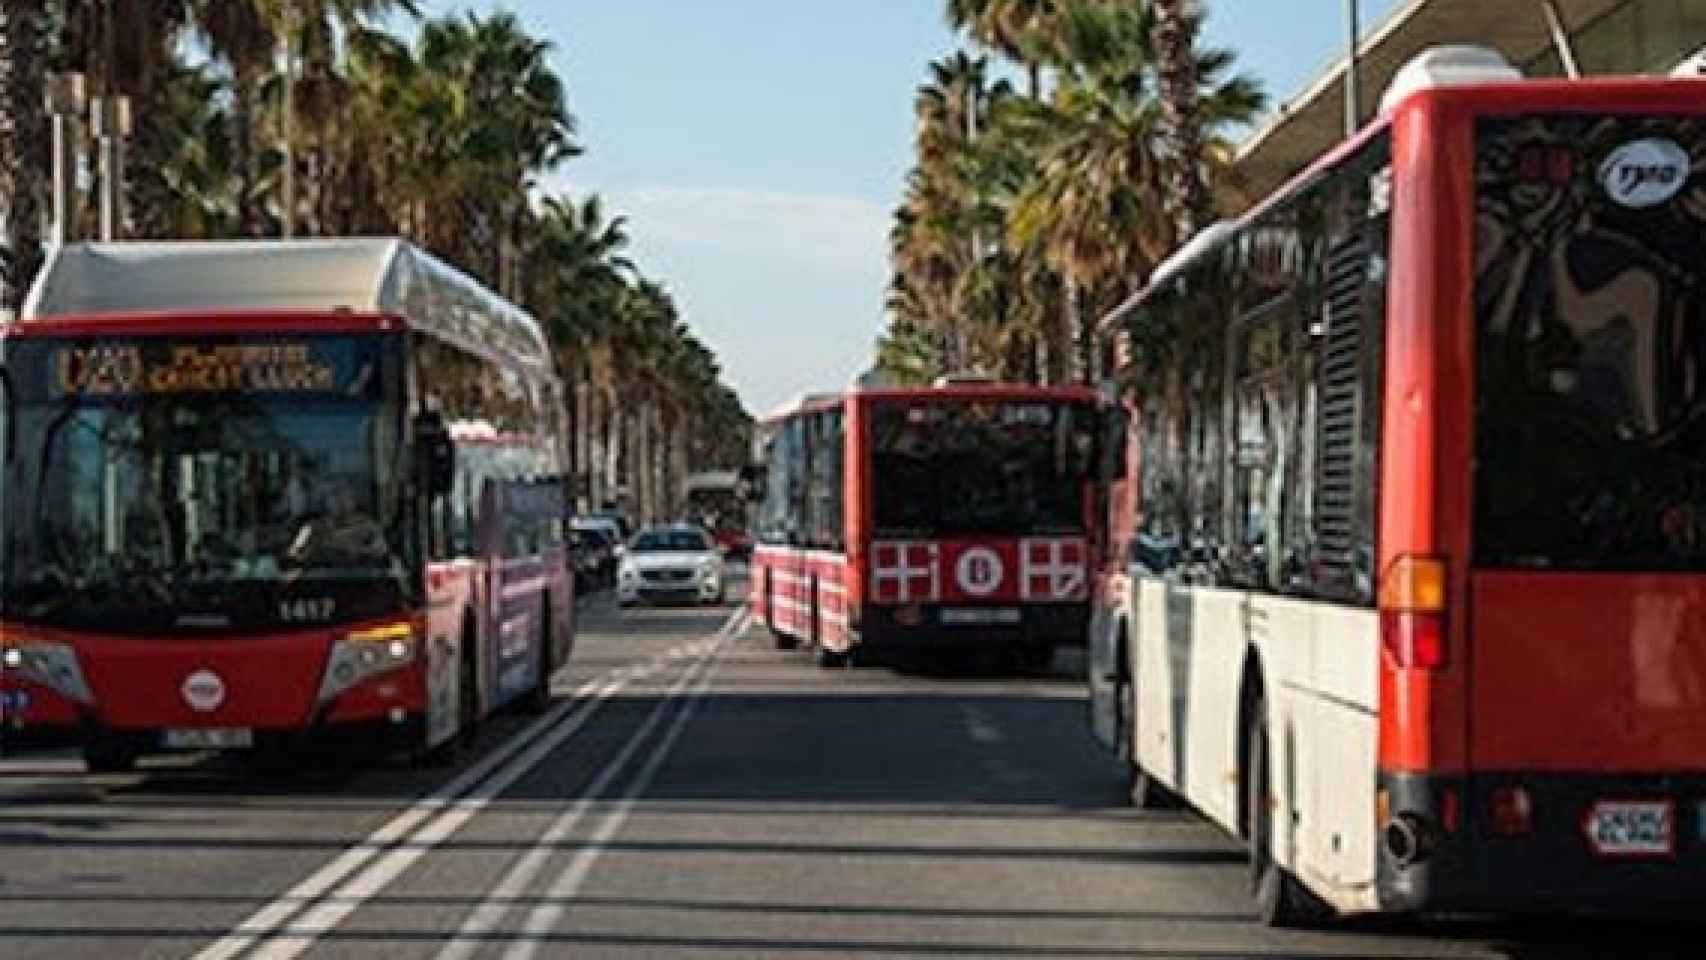 Buses de TMB en una calle de Barcelona / TMB